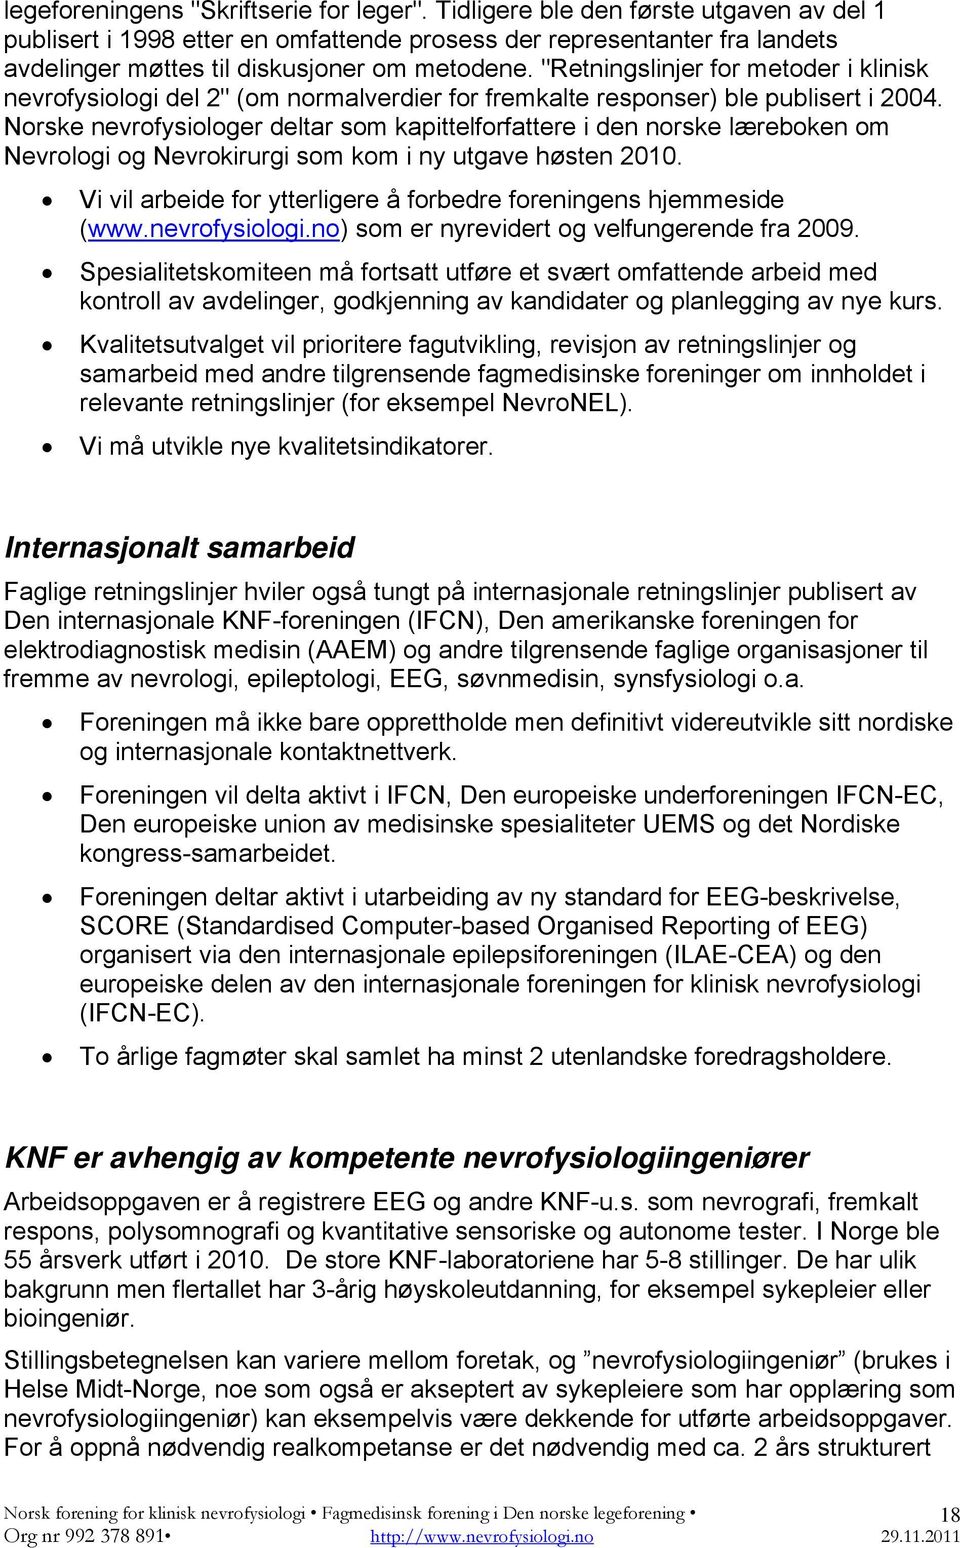 "Retningslinjer for metoder i klinisk nevrofysiologi del 2" (om normalverdier for fremkalte responser) ble publisert i 2004.